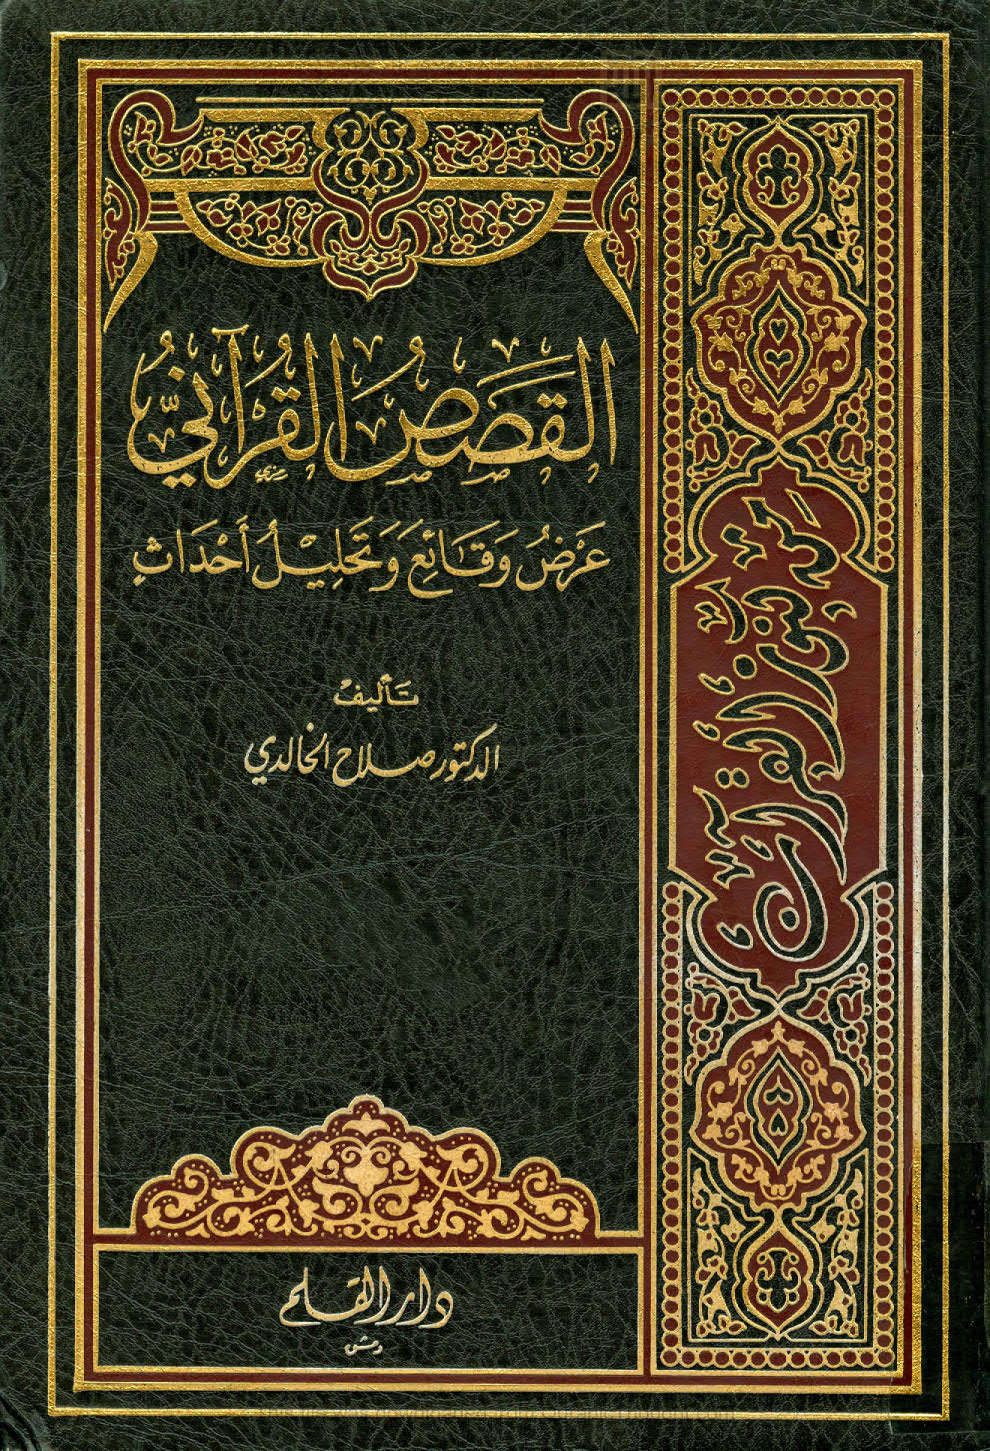 القصص القرآني _ عرض وقائع و تحليل أحداث ( 1 _ 4 )